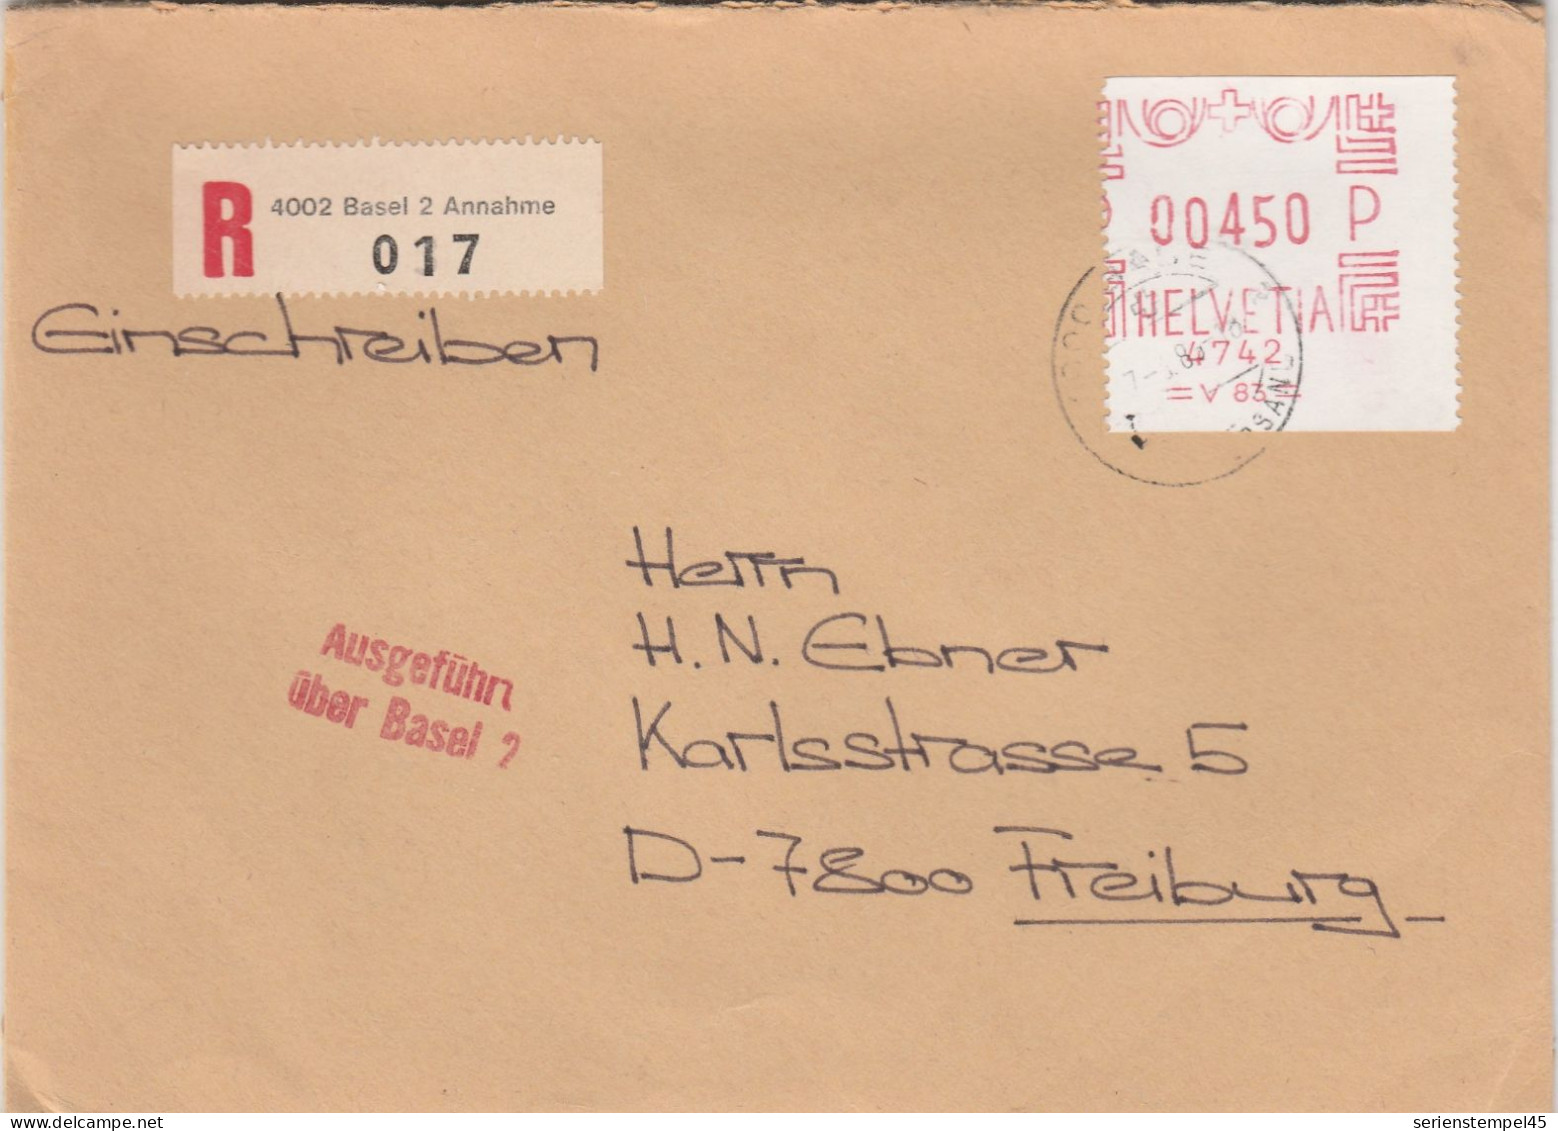 Schweiz Einschreiben Brief 4002 Basel 2 Annahme Mit Freistempel 4742 Porto 450 P 1985 - Postage Meters